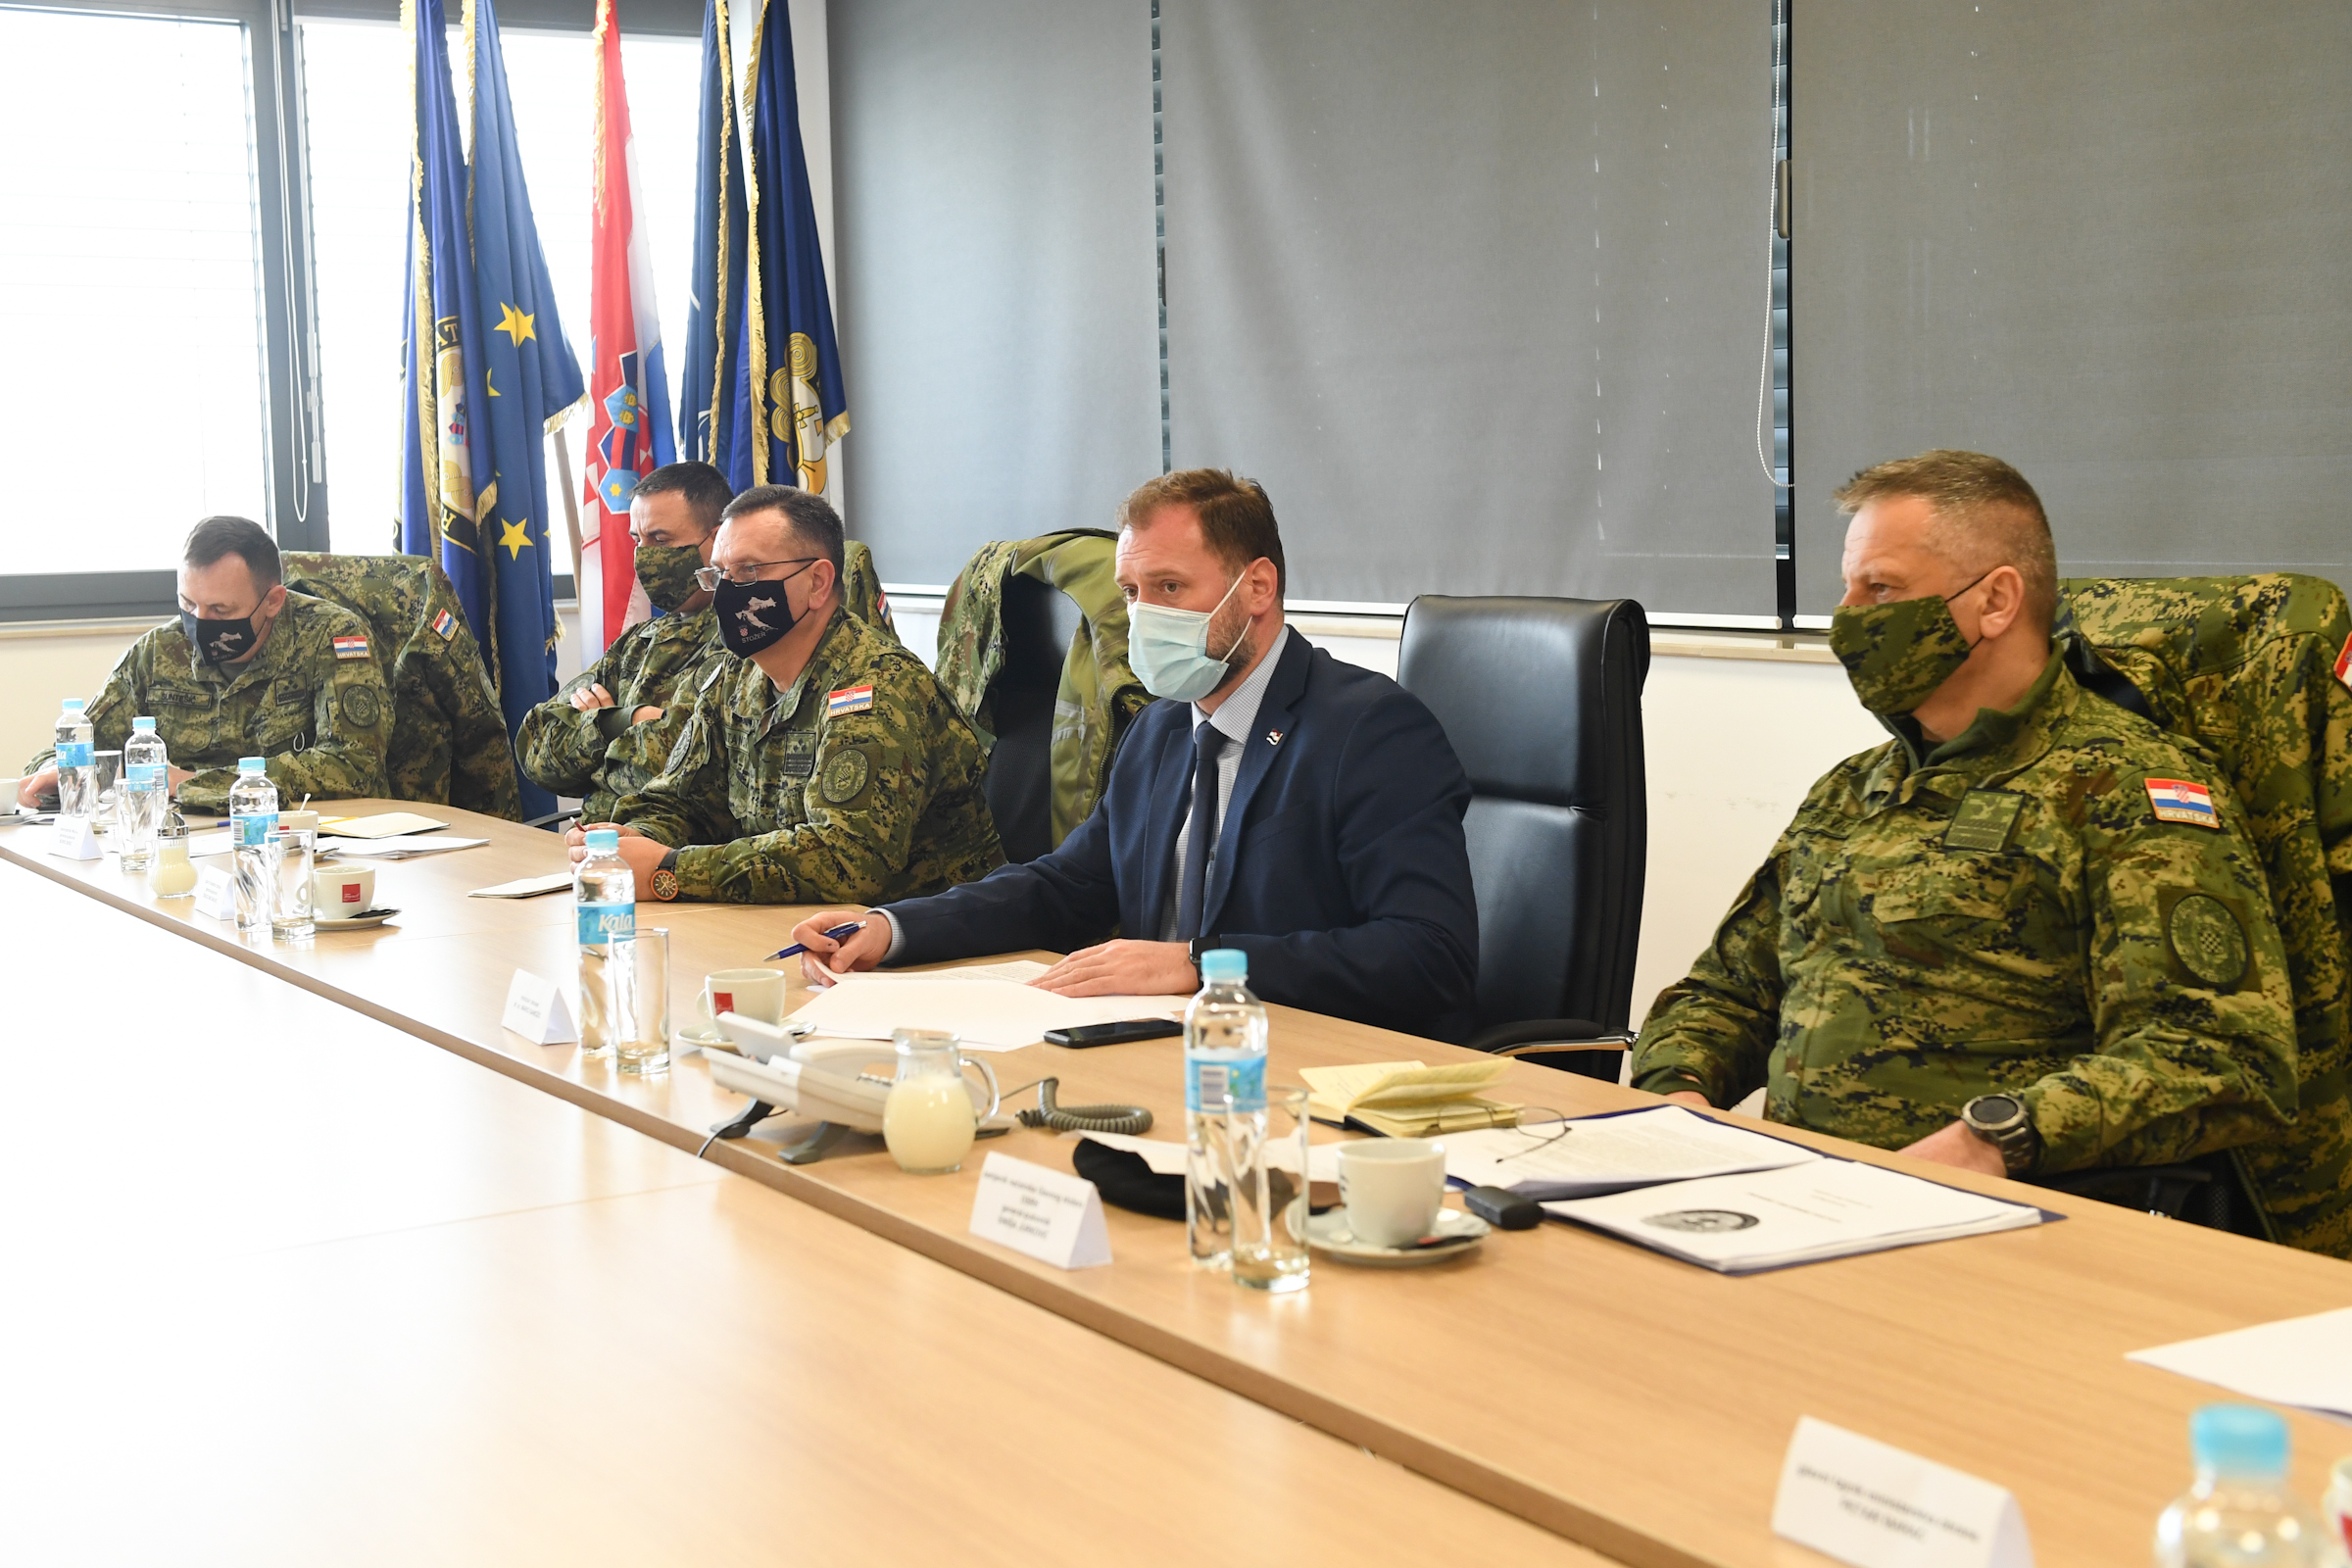 Ministar Banožić obišao je i vojarnu u Petrinji gdje je održao kolegij